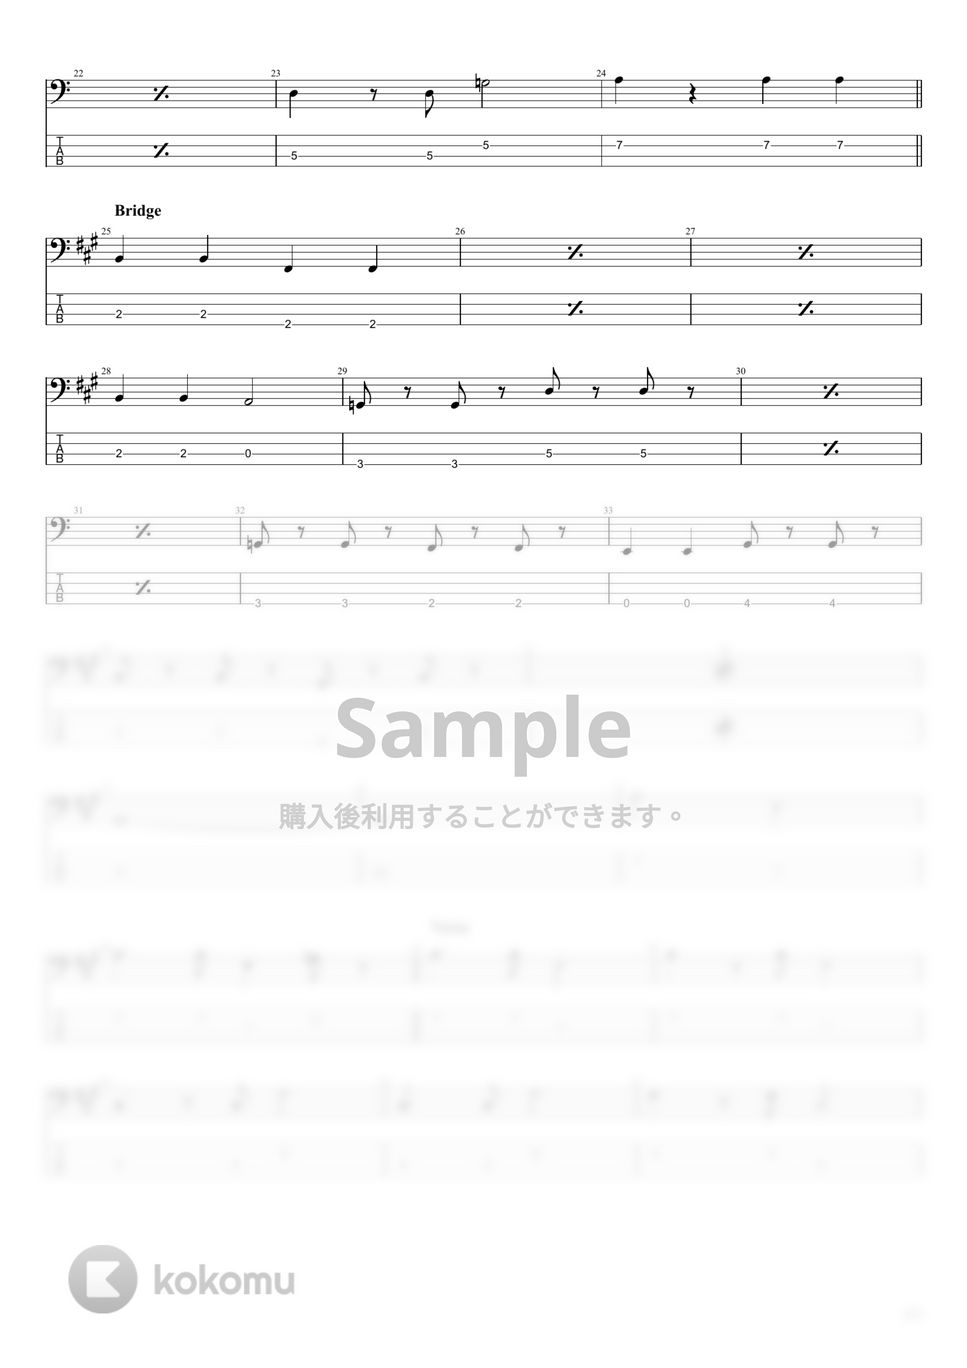 ビートルズ - Help! by まっきん